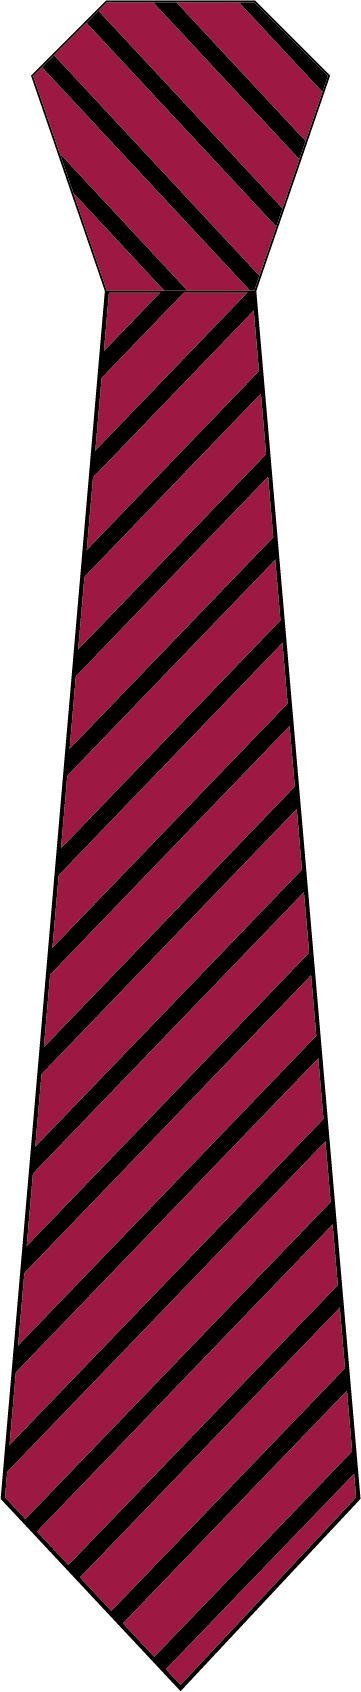 Tiverton Tie Maroon Single Stripe